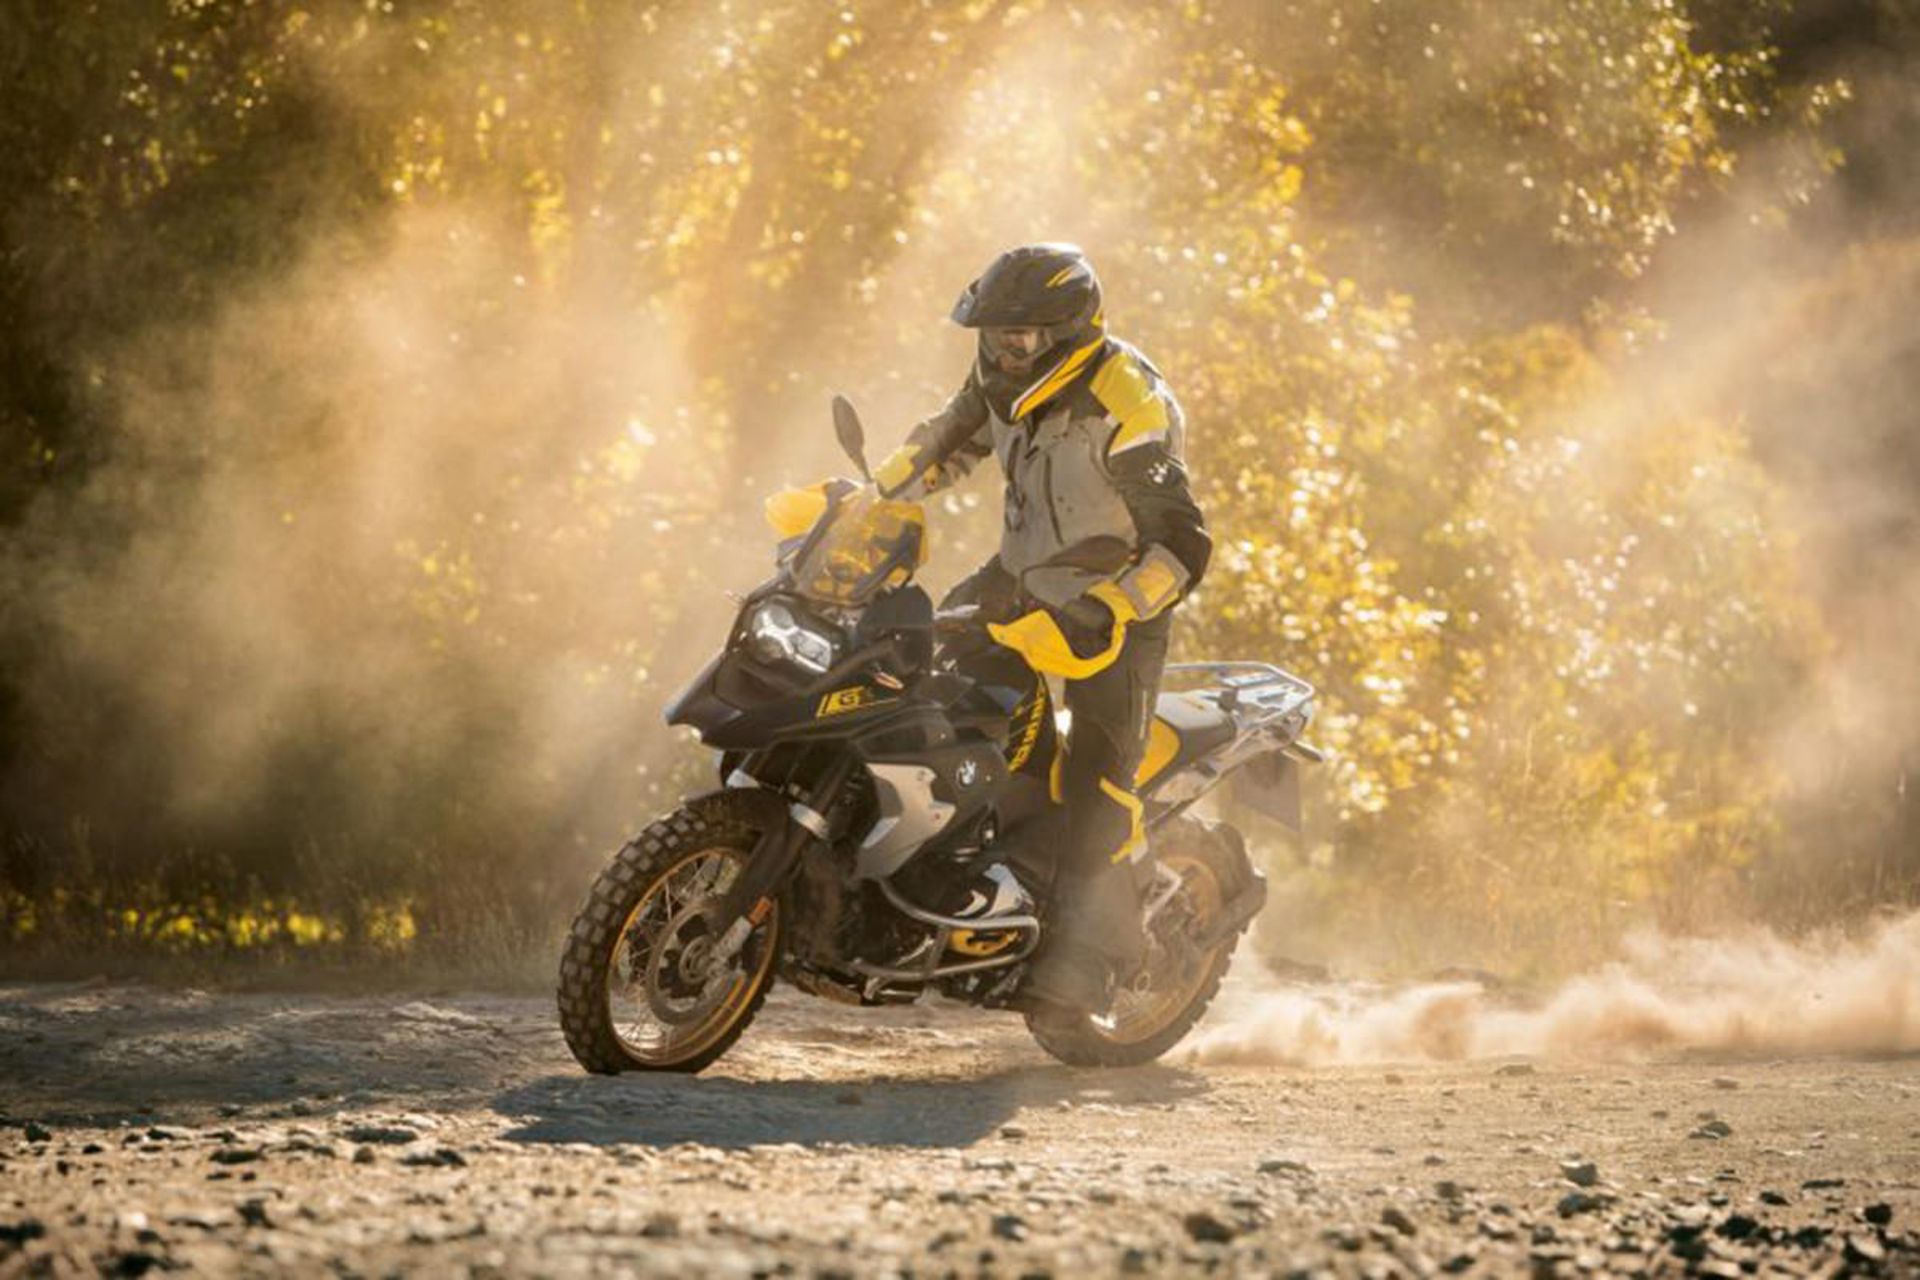 موتورسیکلت بی ام و / 2021 BMW R 1250 GS با رنگ زرد و سیاه در کوهستان